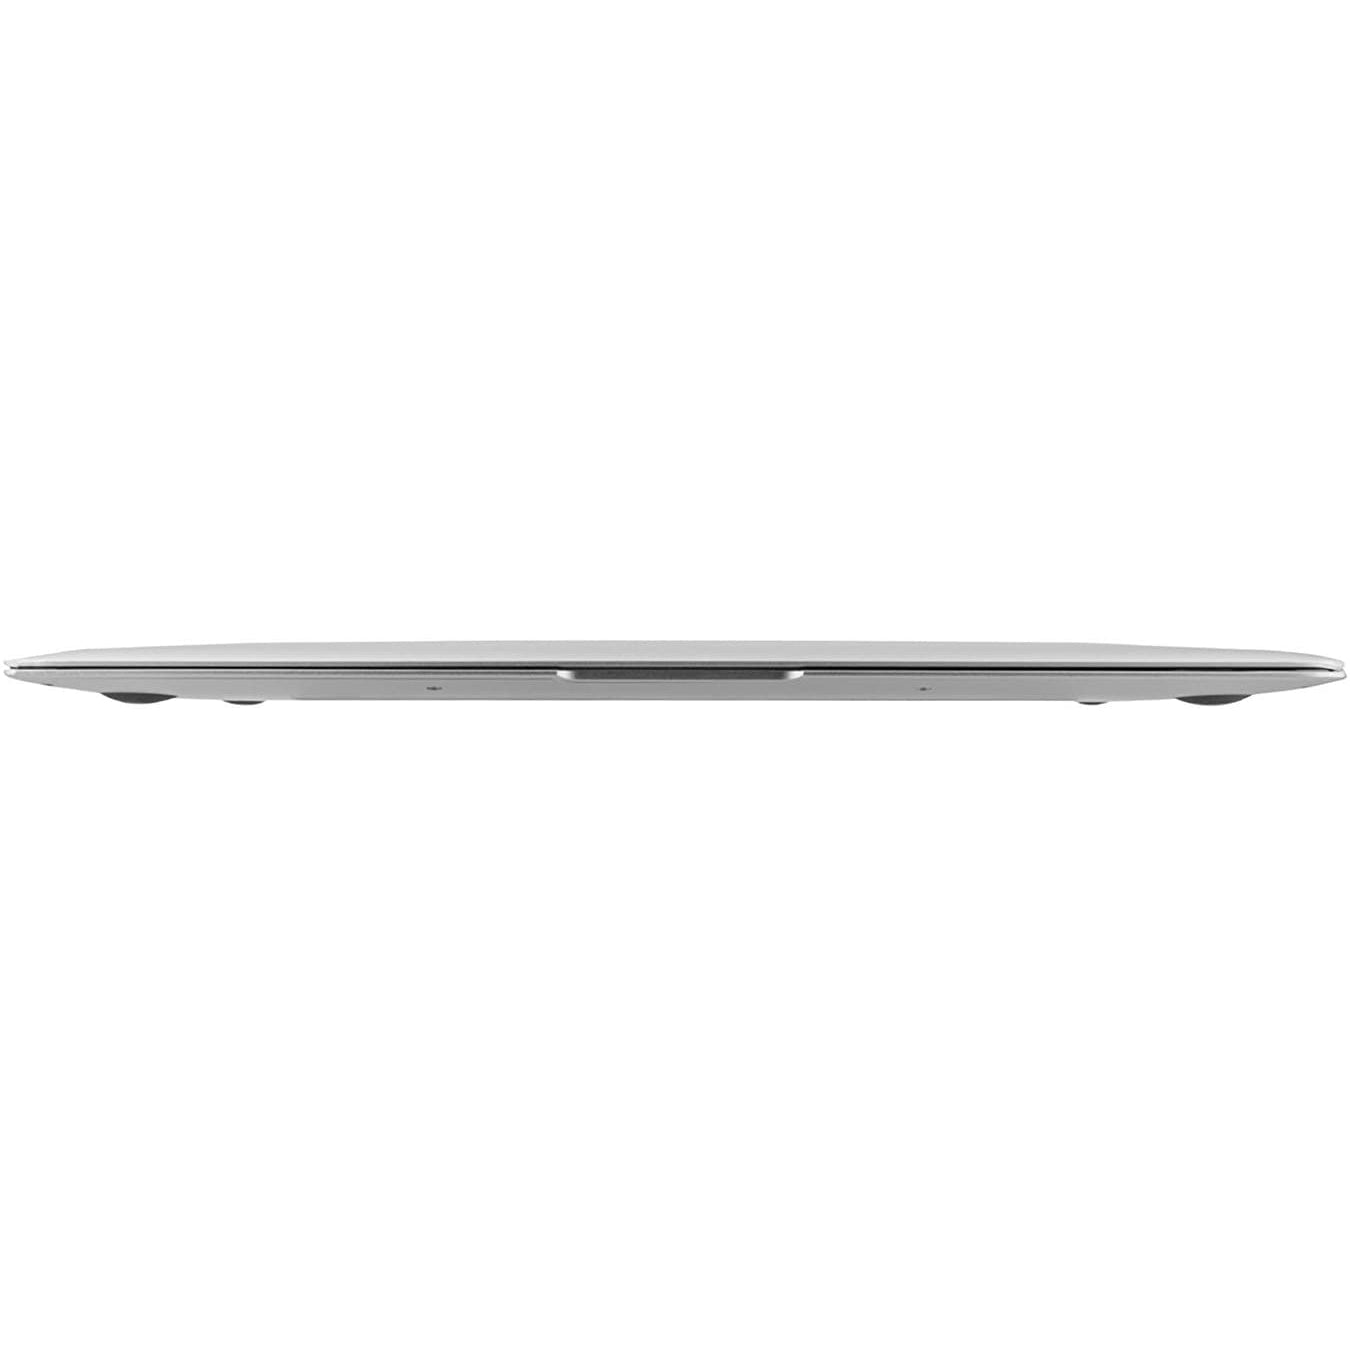 Apple MacBook Air 11.6'' MJVM2LL/A (2015) Intel Core i5 4GB RAM 128GB SSD - Good